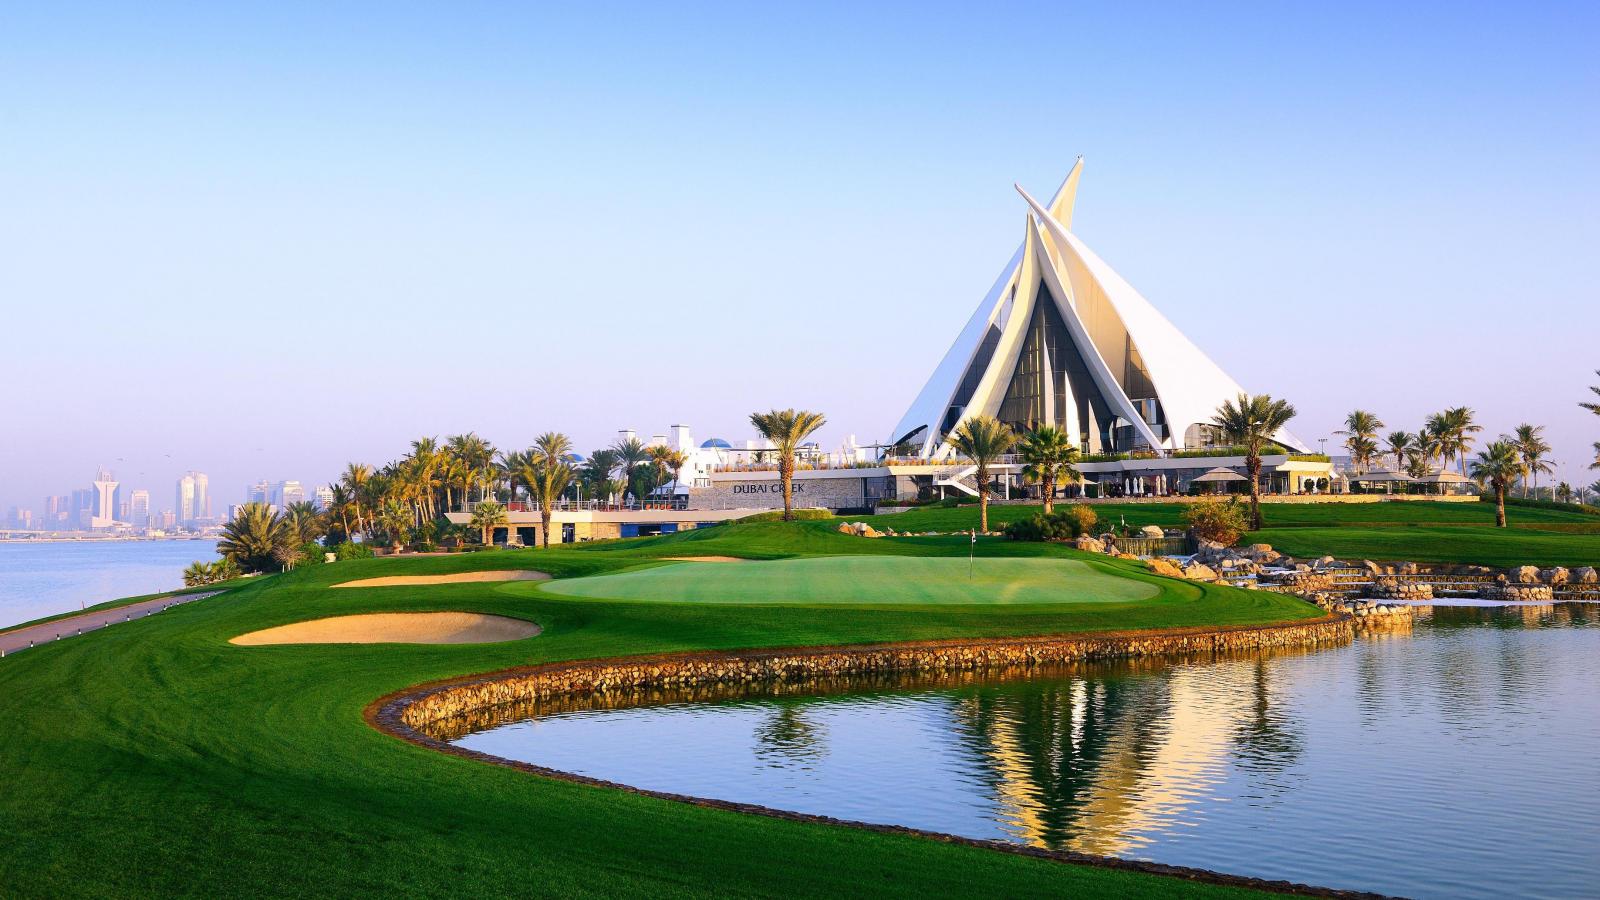 杜拜河高爾夫遊艇俱樂部位於杜拜中心區，曾於1999年及2000年舉辦過二屆的杜拜沙漠菁英賽，同屬中東地區首屈一指的高爾夫球場，如今已發展為一功能俱全的渡假以及住宅區，堪稱是富人的天堂。